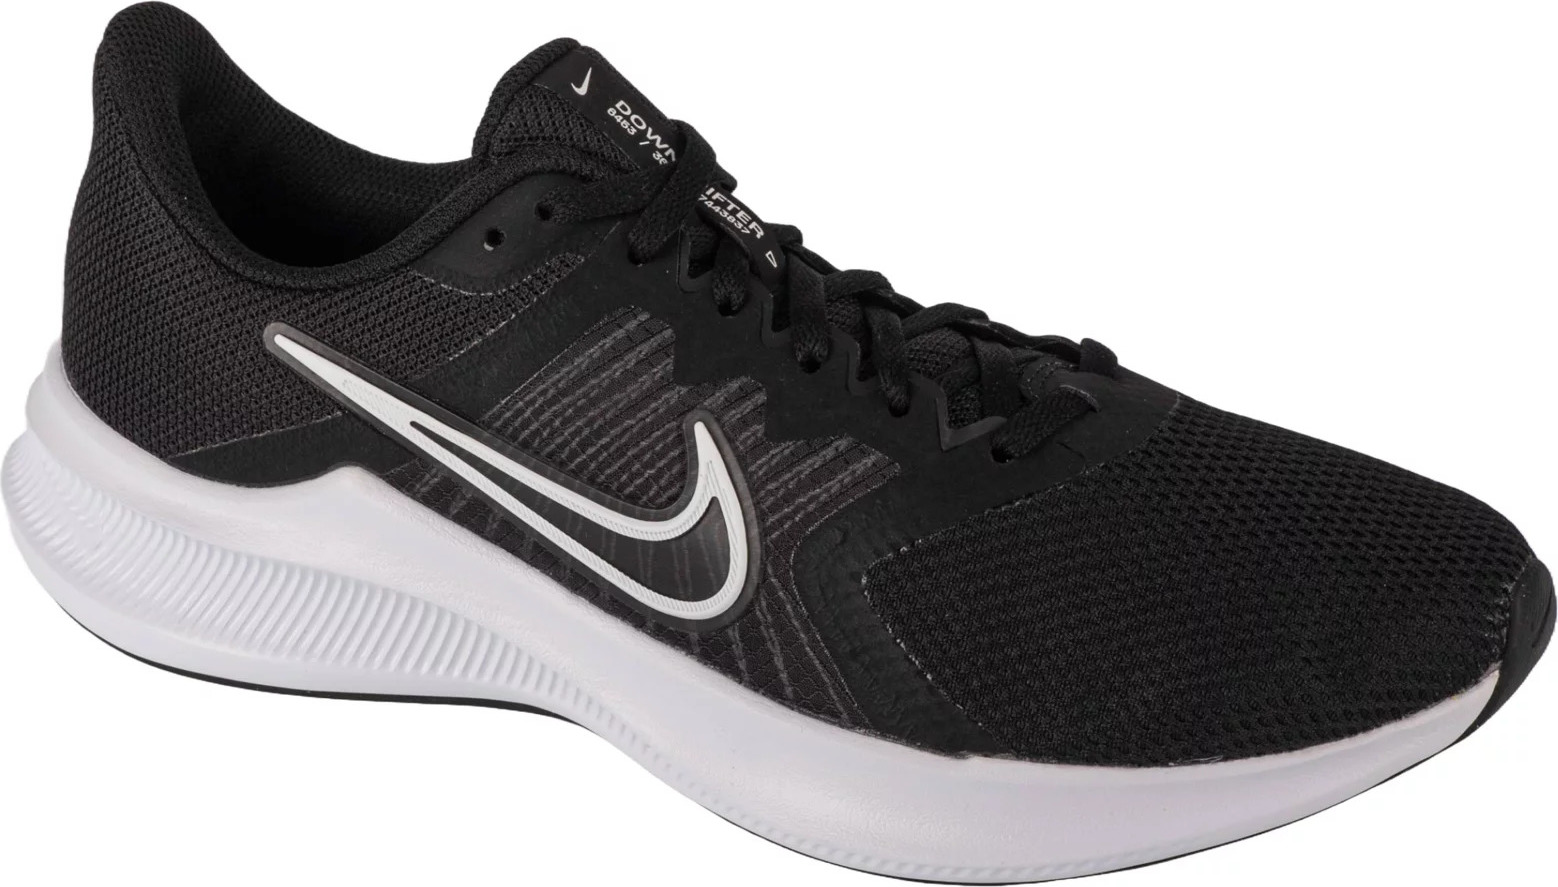 Černé pánské tenisky Nike Downshifter 11 CW3411-006 Velikost: 42